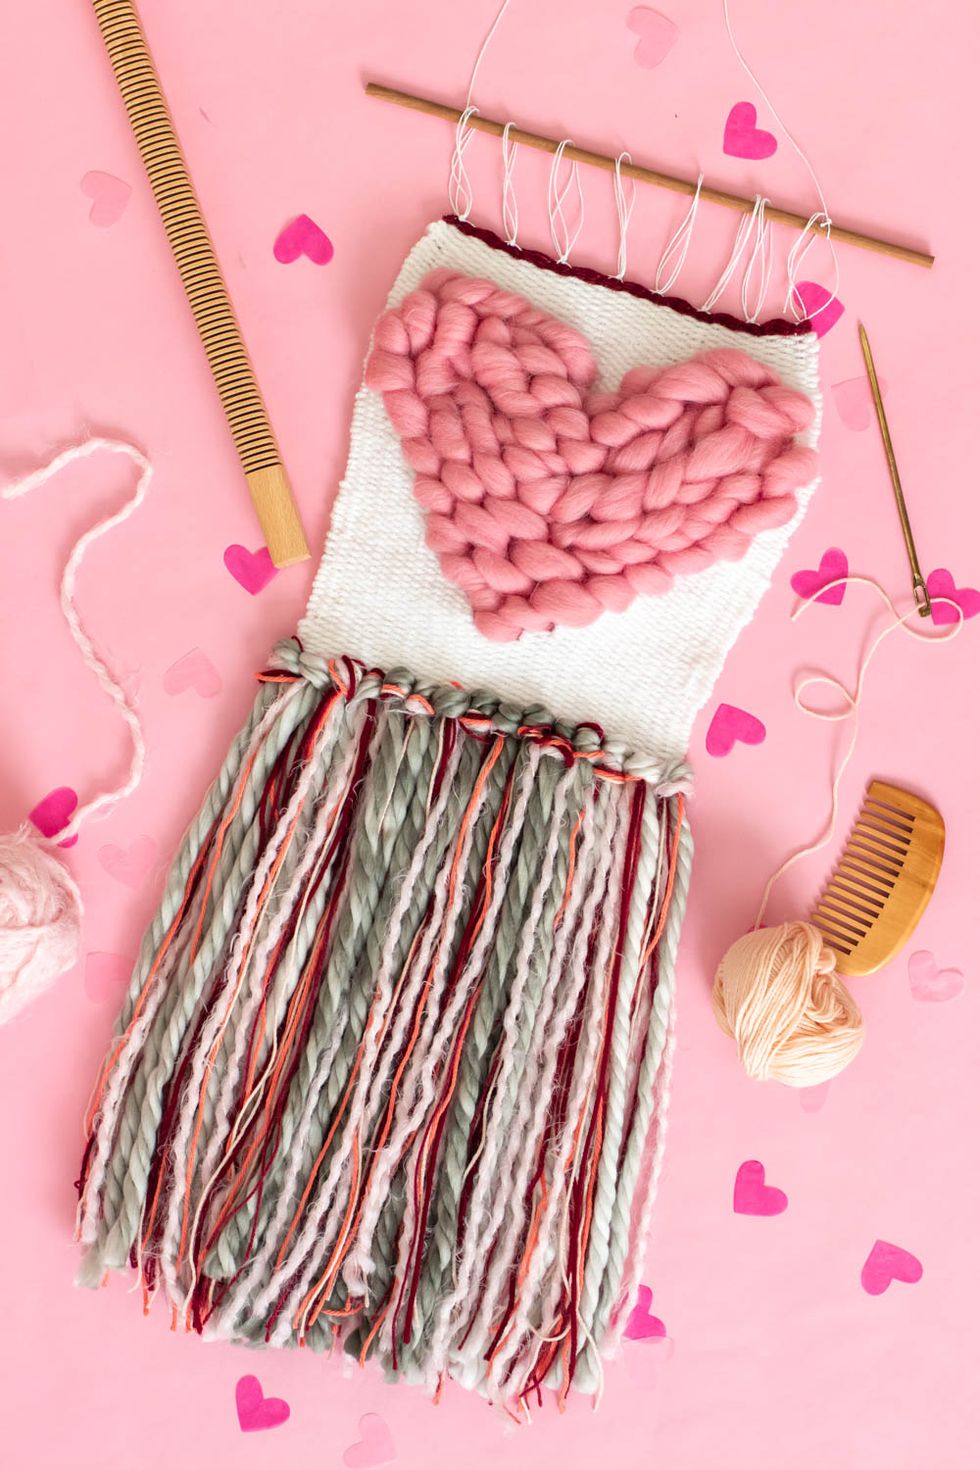 55+ DIY Valentine's Day Gift Ideas